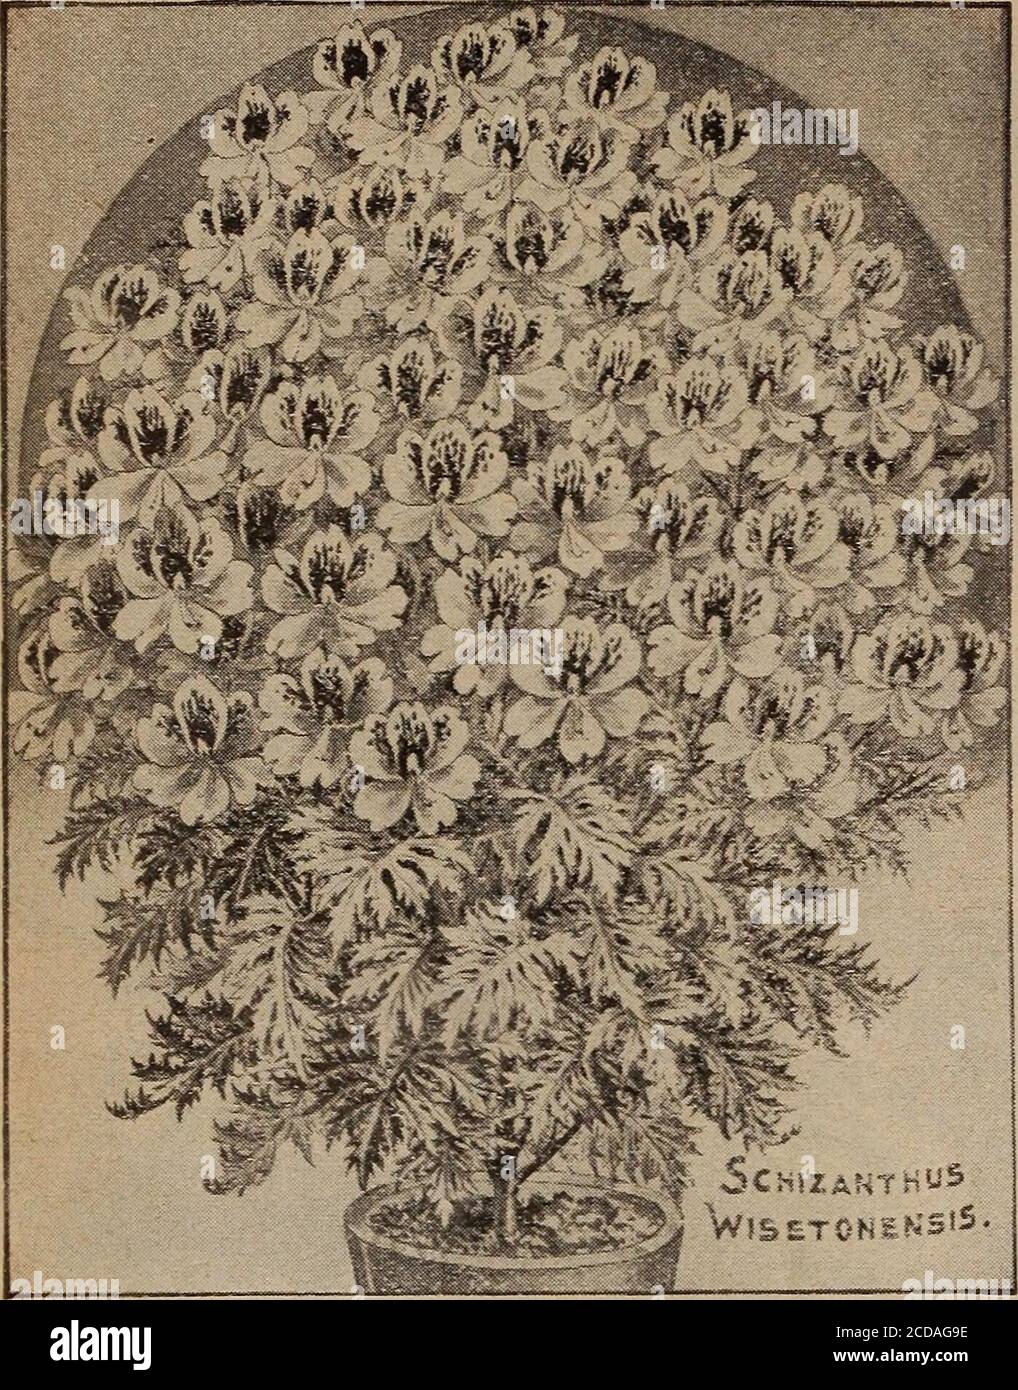 . Childs' Frühling 1922 : Samen, die Pflanzen, die Blumen, die Beeren blühen, die tragen bitte befriedigen. 48 JOHN LEWIS CHILDS, INC., FLORAL PARK, NEW YORK. SCHIZANTHUS, Wisetonensis Hybriden wie schöne Orchideen, Laub wie Fern Wedden Dieses neue Fern-leaved Jahr hat sich als mostnovel und schön erwiesen. Pflanzen wachsen frei und die Blüten erscheinen in Rispen und ähneln einigen Orchideenarten.jede Blume sieht aus wie ein schöner Schmetterling mit ausbreitenden Flügeln von zarter und abwechslungsreicher Farbe. Am besten von allen, ist es leicht aus Samen gewachsen, beginnend zu blühen inabout zwei Monate ab dem Zeitpunkt der Aussaat. Wie Stockfoto